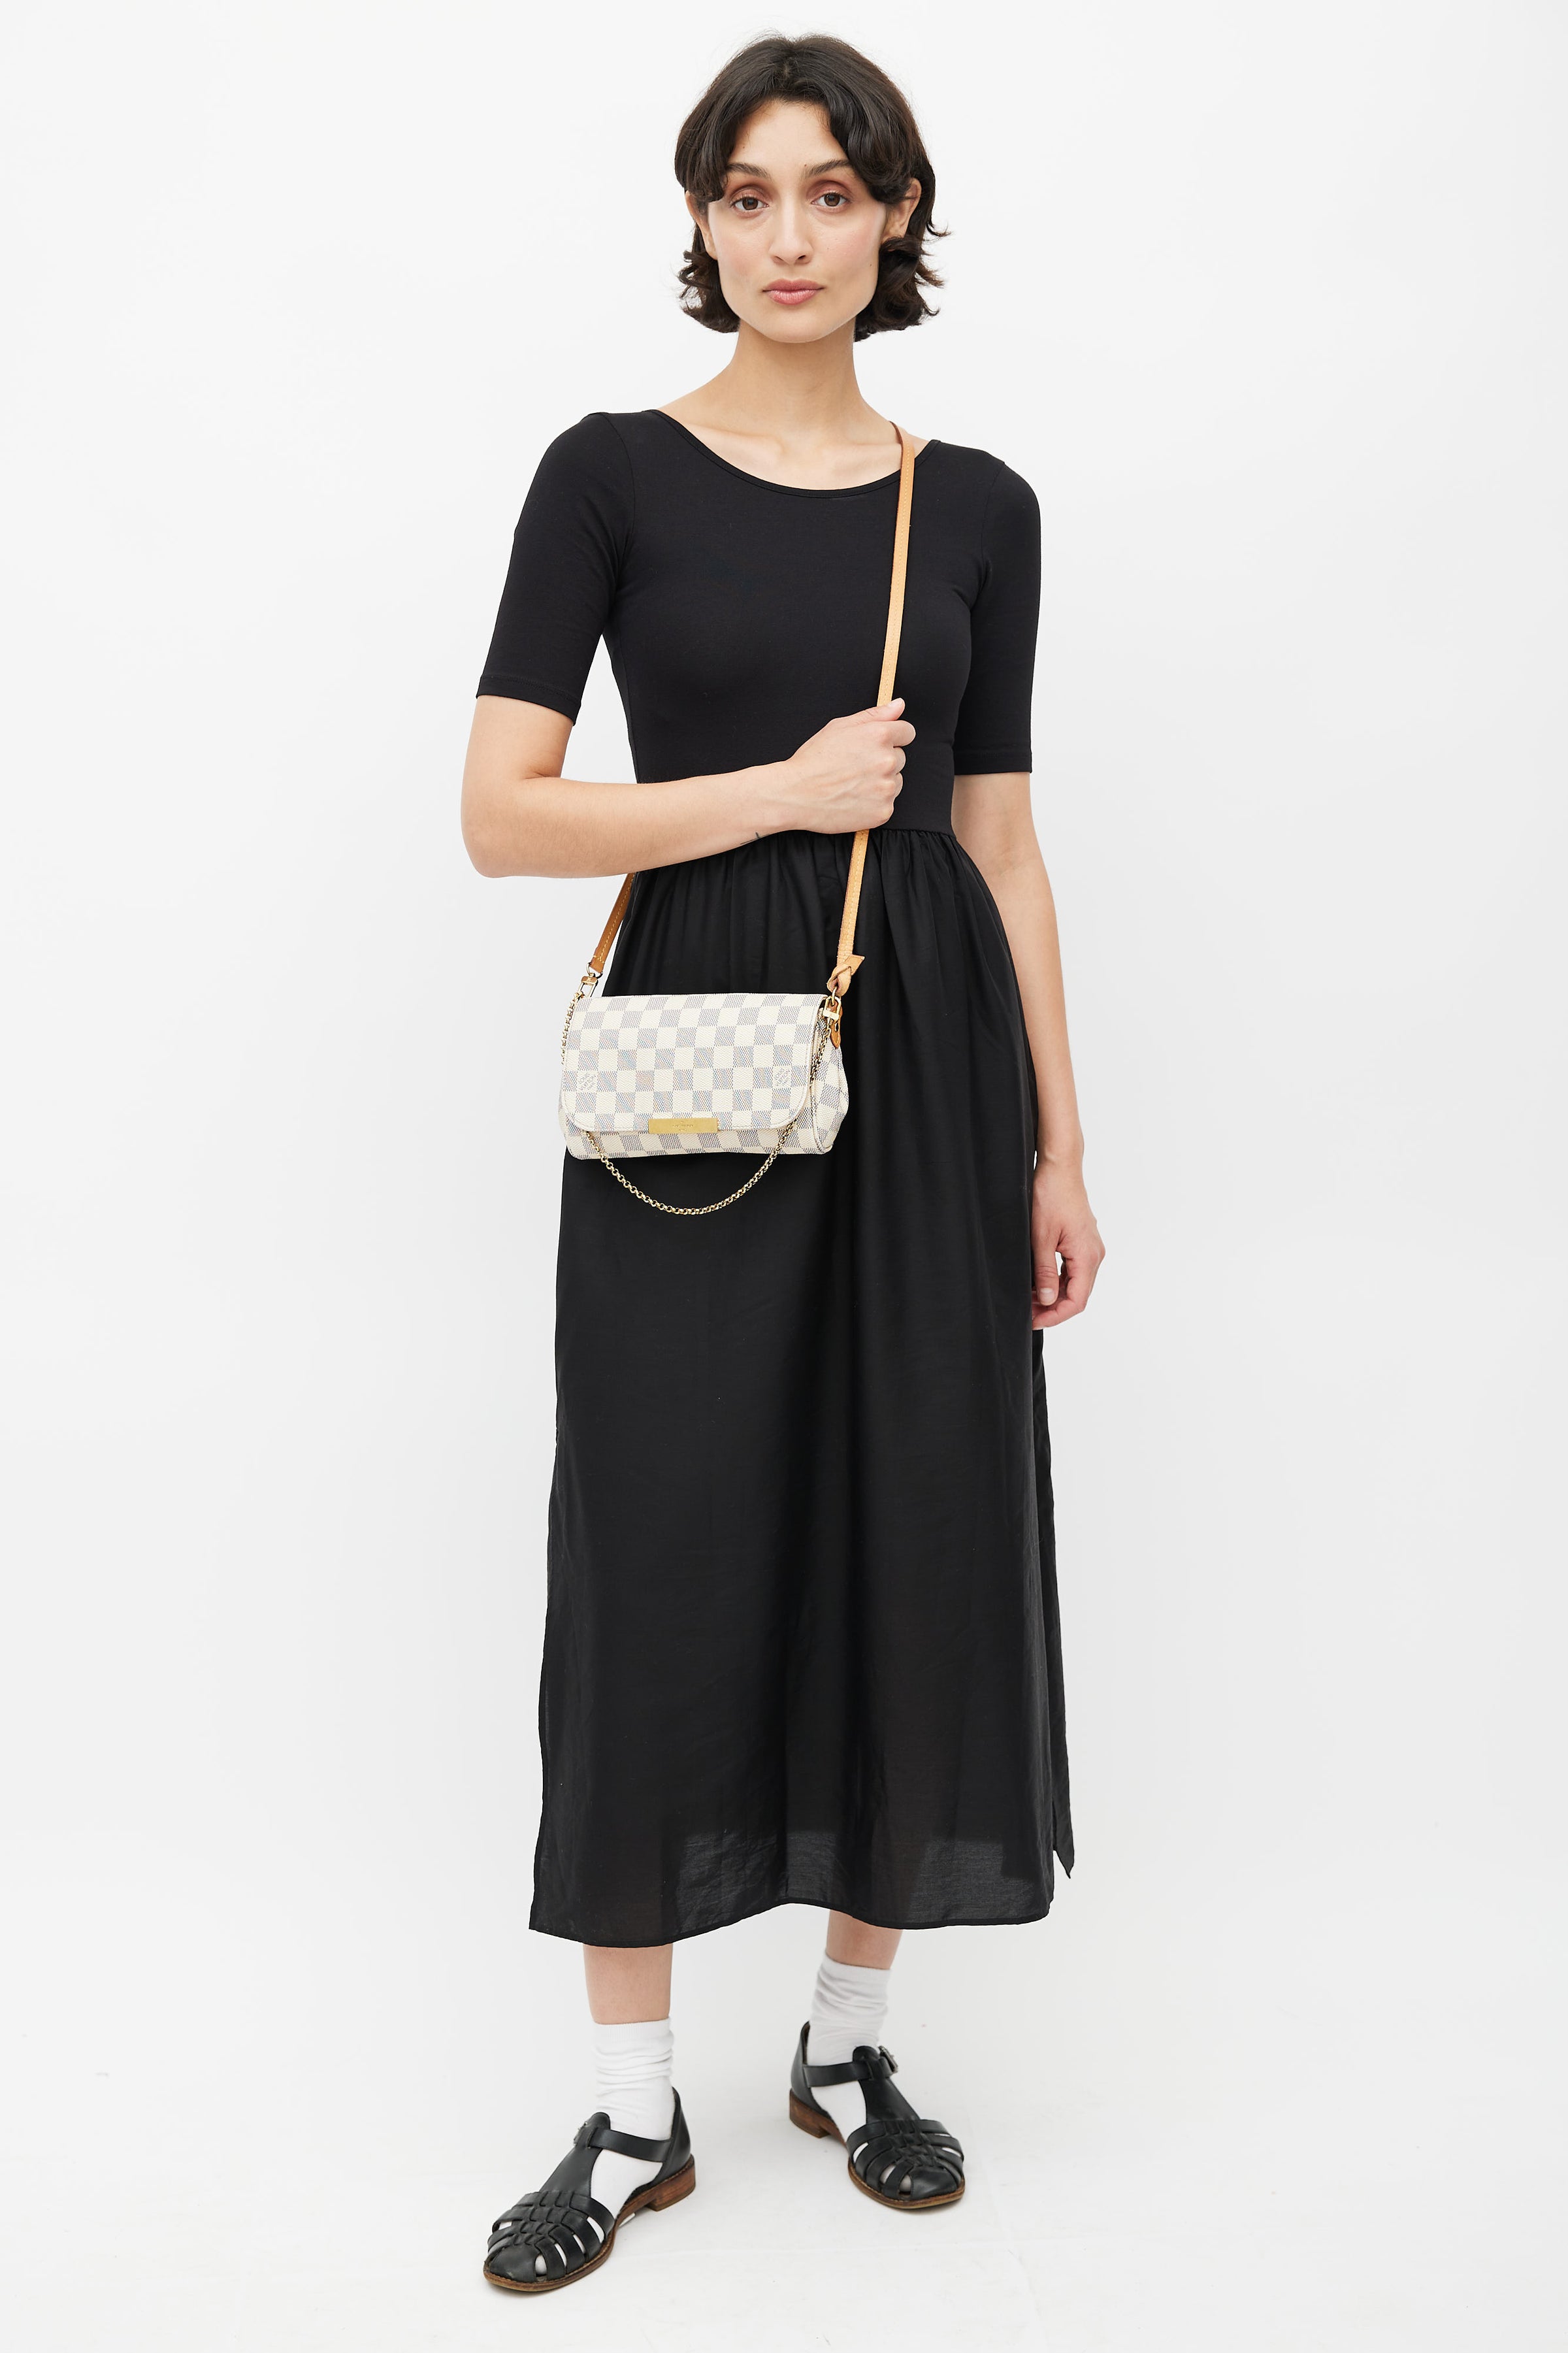 Louis Vuitton Damier Azur Favorite Pm Shoulder Bag